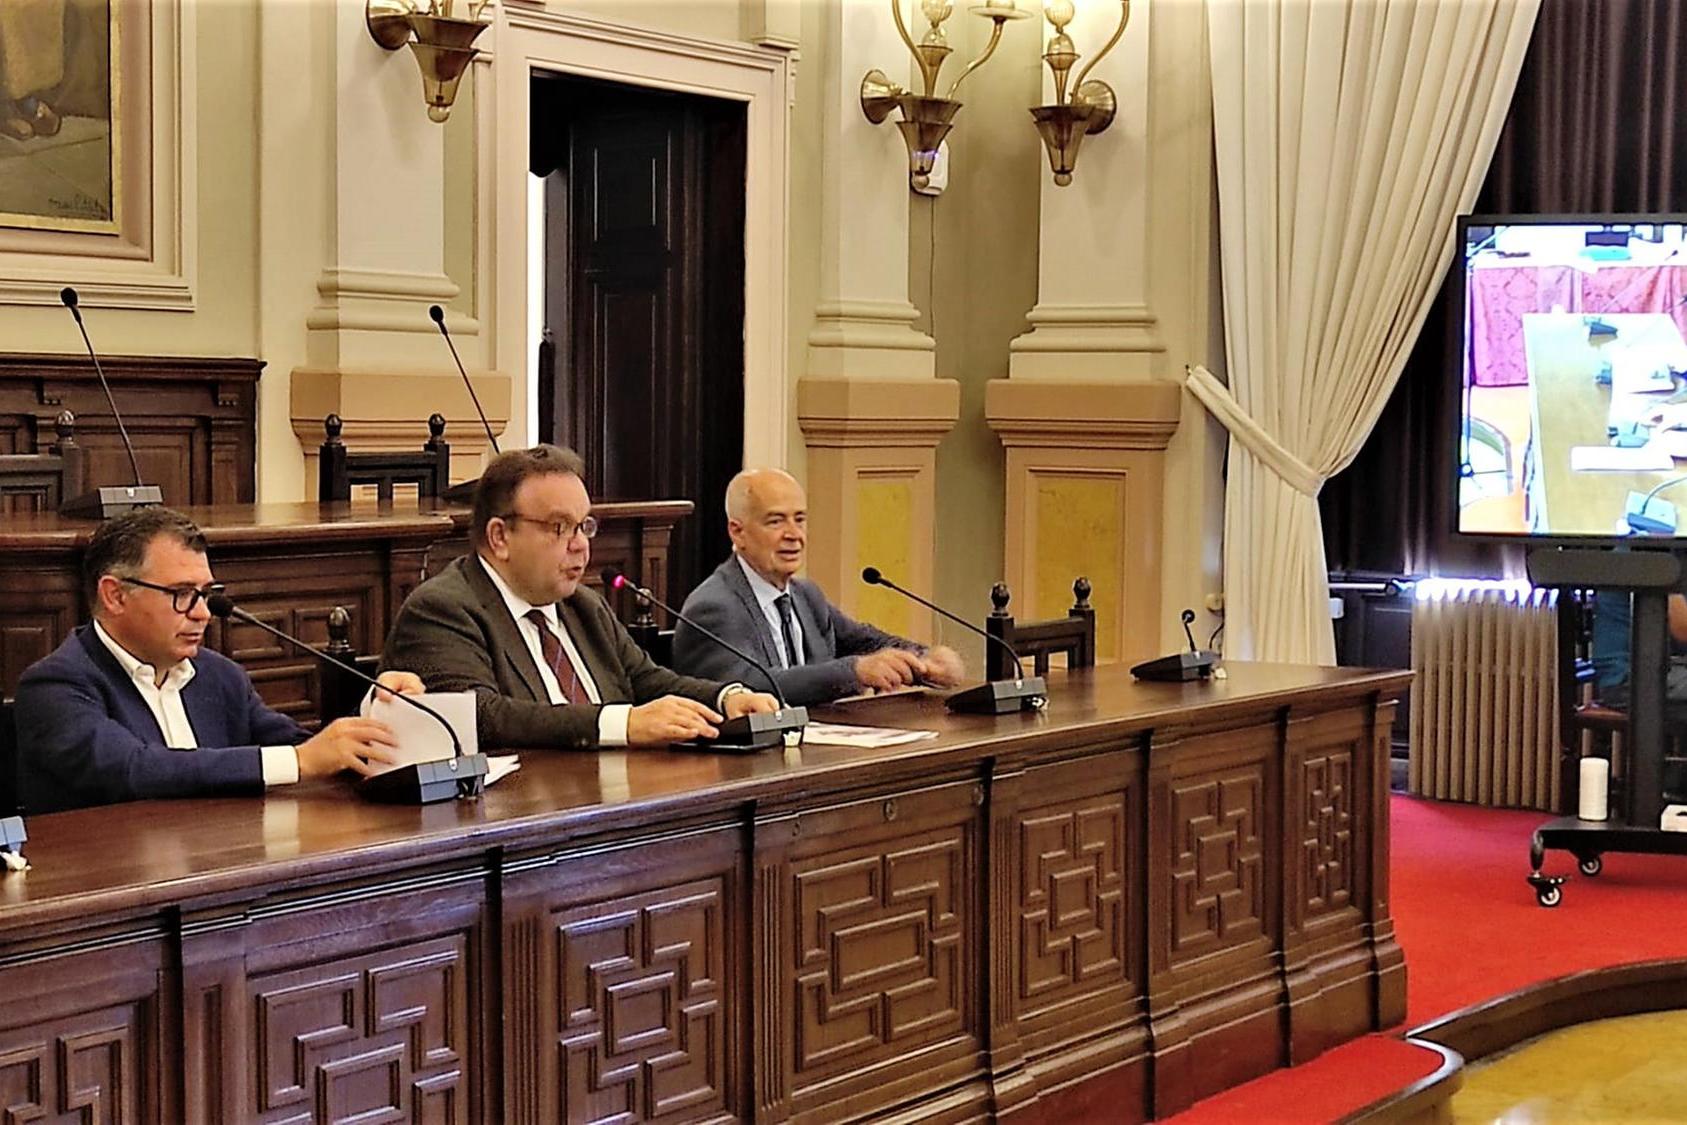 Da sinistra: Chessa, Mariotti e Cherchi alla conferenza stampa di presentazione (foto G. Marras)